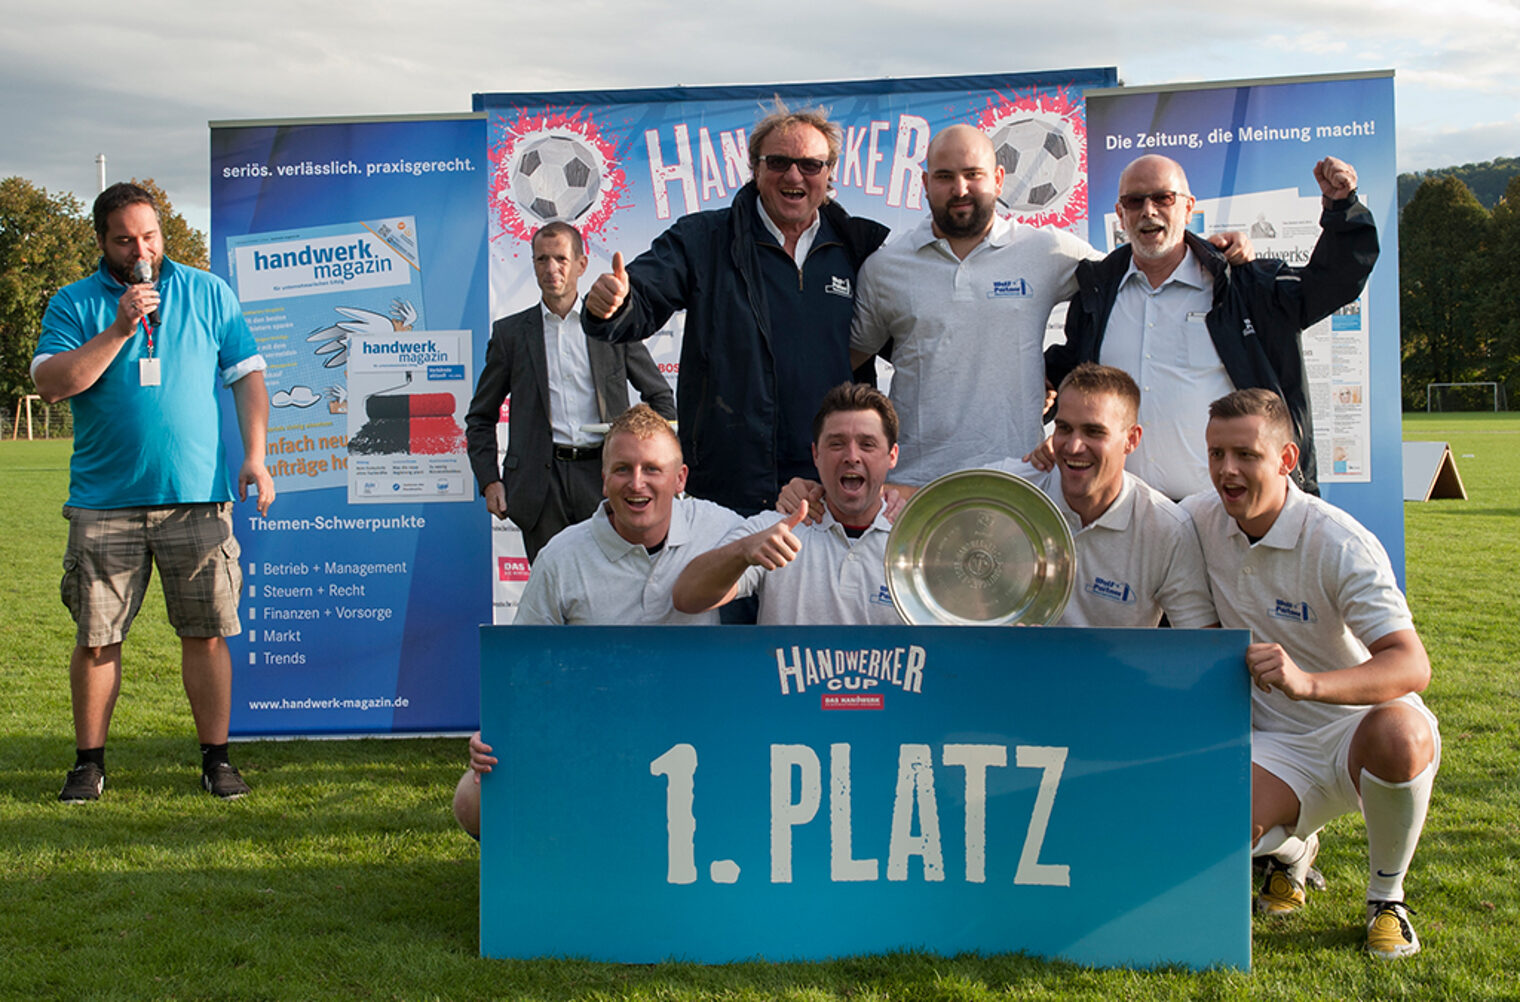 Der Sieger des Handwerker Cups 2015: Die Wolf+Partner Bau GmbH holte sich wie schon 2013 den Turniersieg. In einem packenden Finale gab es einen 2:1-Sieg gegen Meister Arslan. Unser Vizepräsident Alexander Kotz übergab die Meisterschale. 